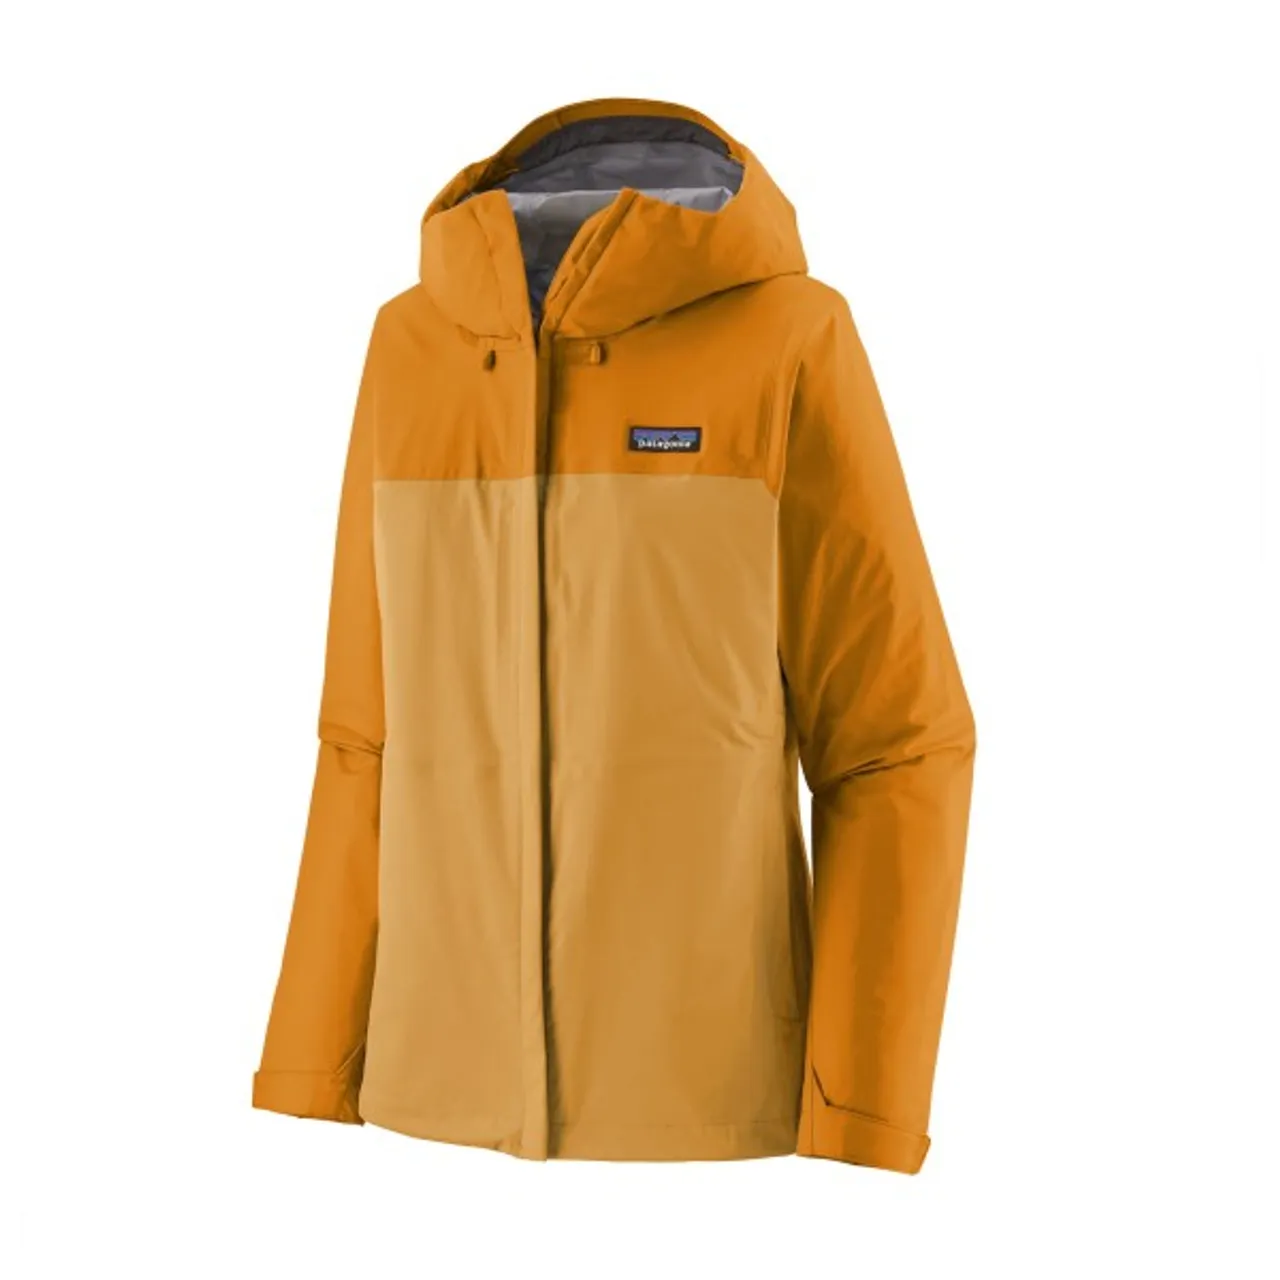 Patagonia - Women's Torrentshell 3L Jacket - Waterproof jacket